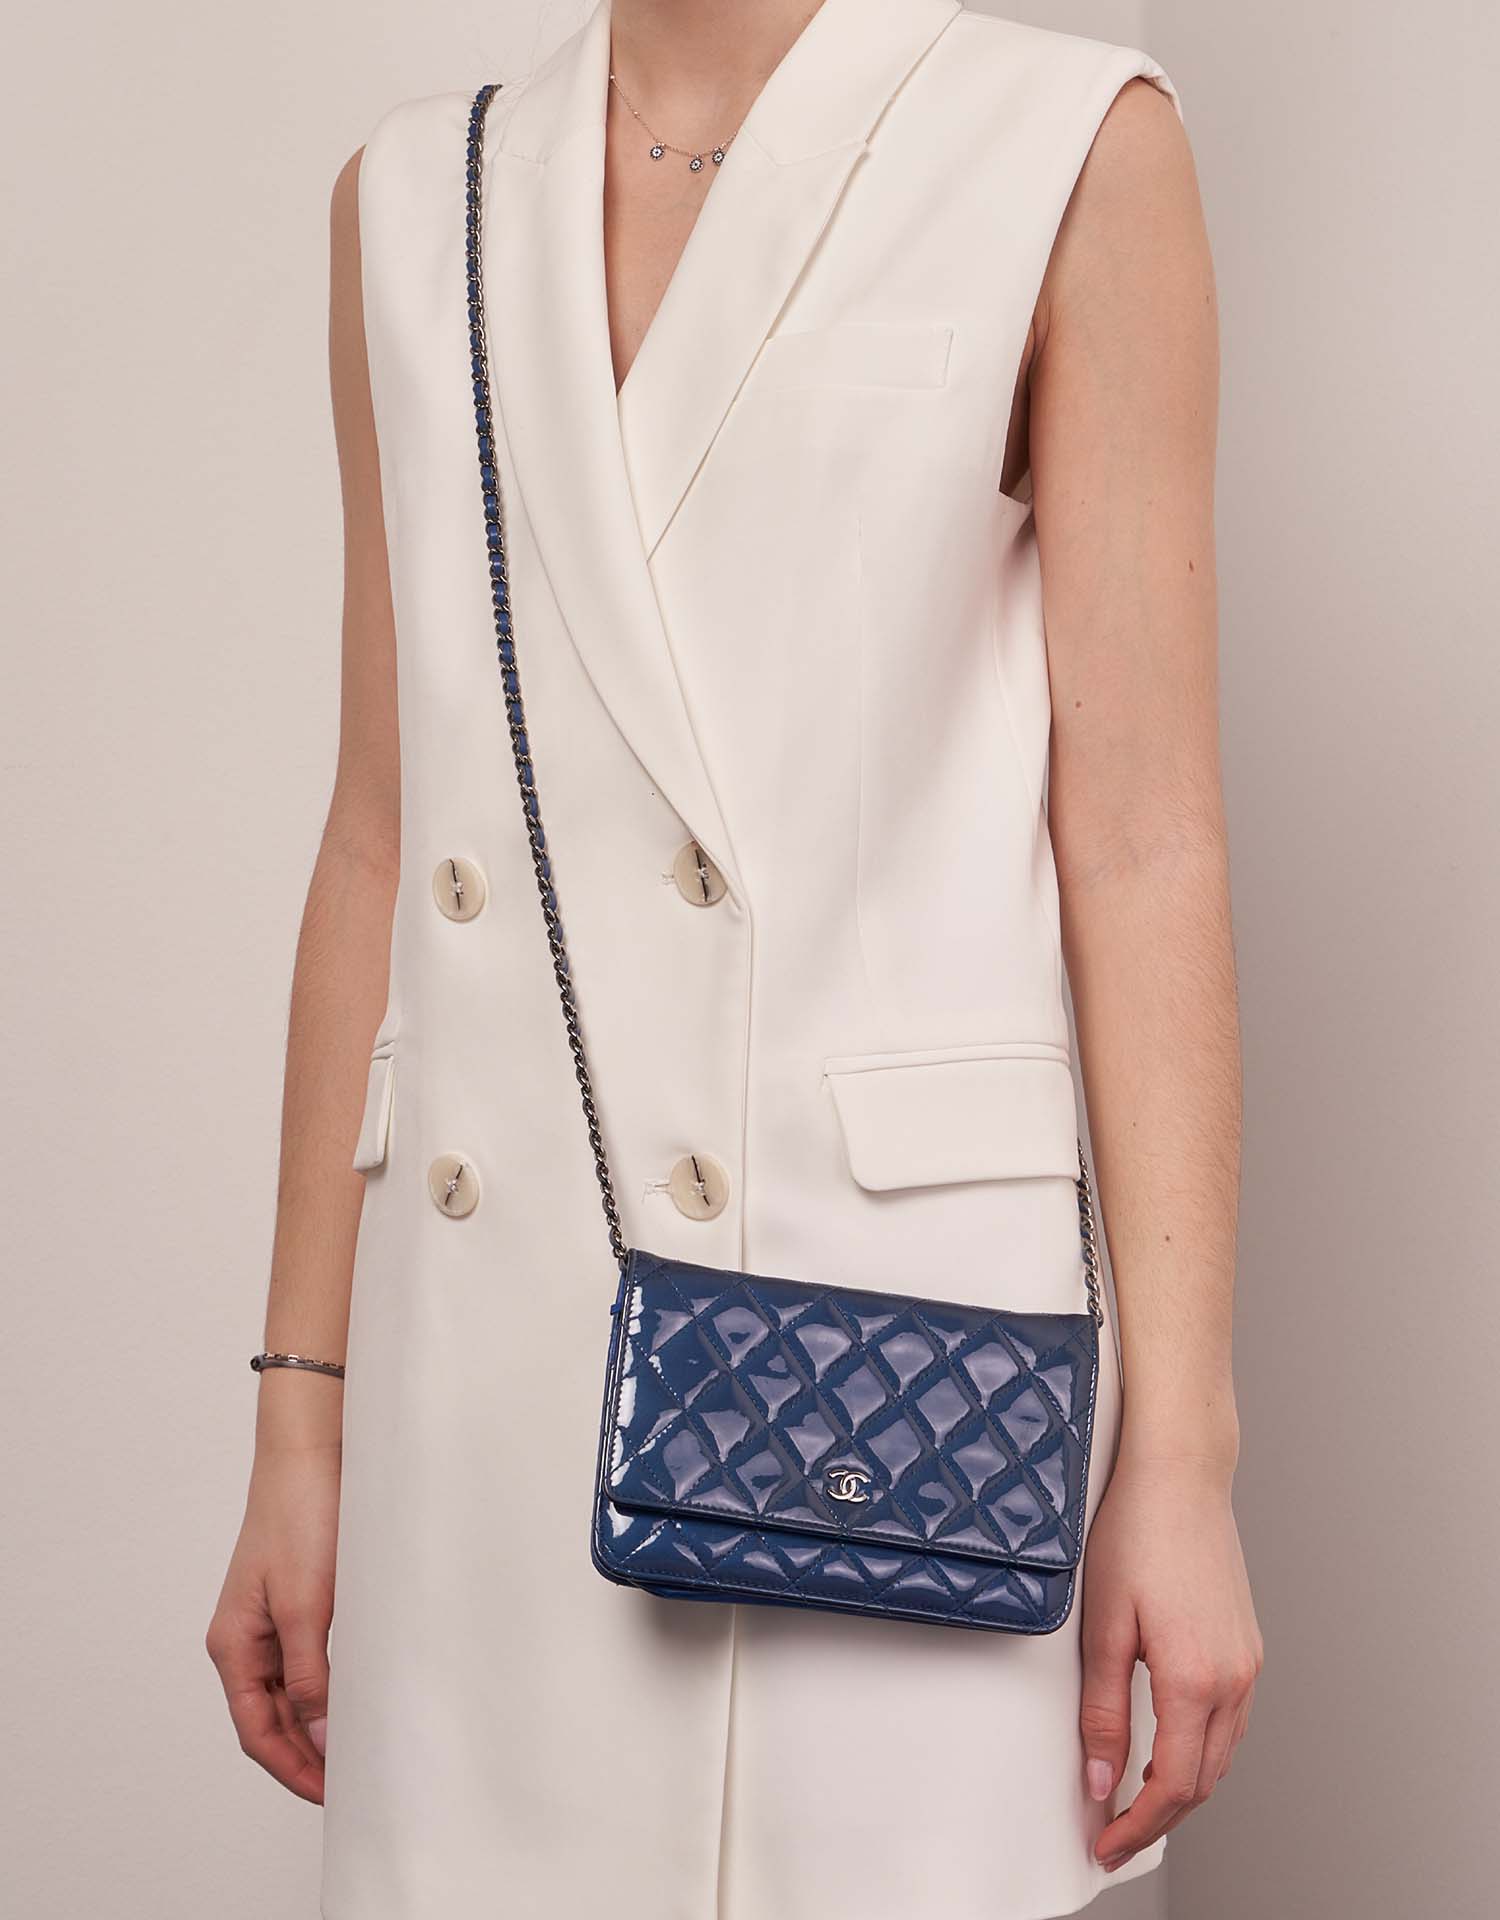 Chanel Timeless WOC Blau 1M | Verkaufen Sie Ihre Designer-Tasche auf Saclab.com